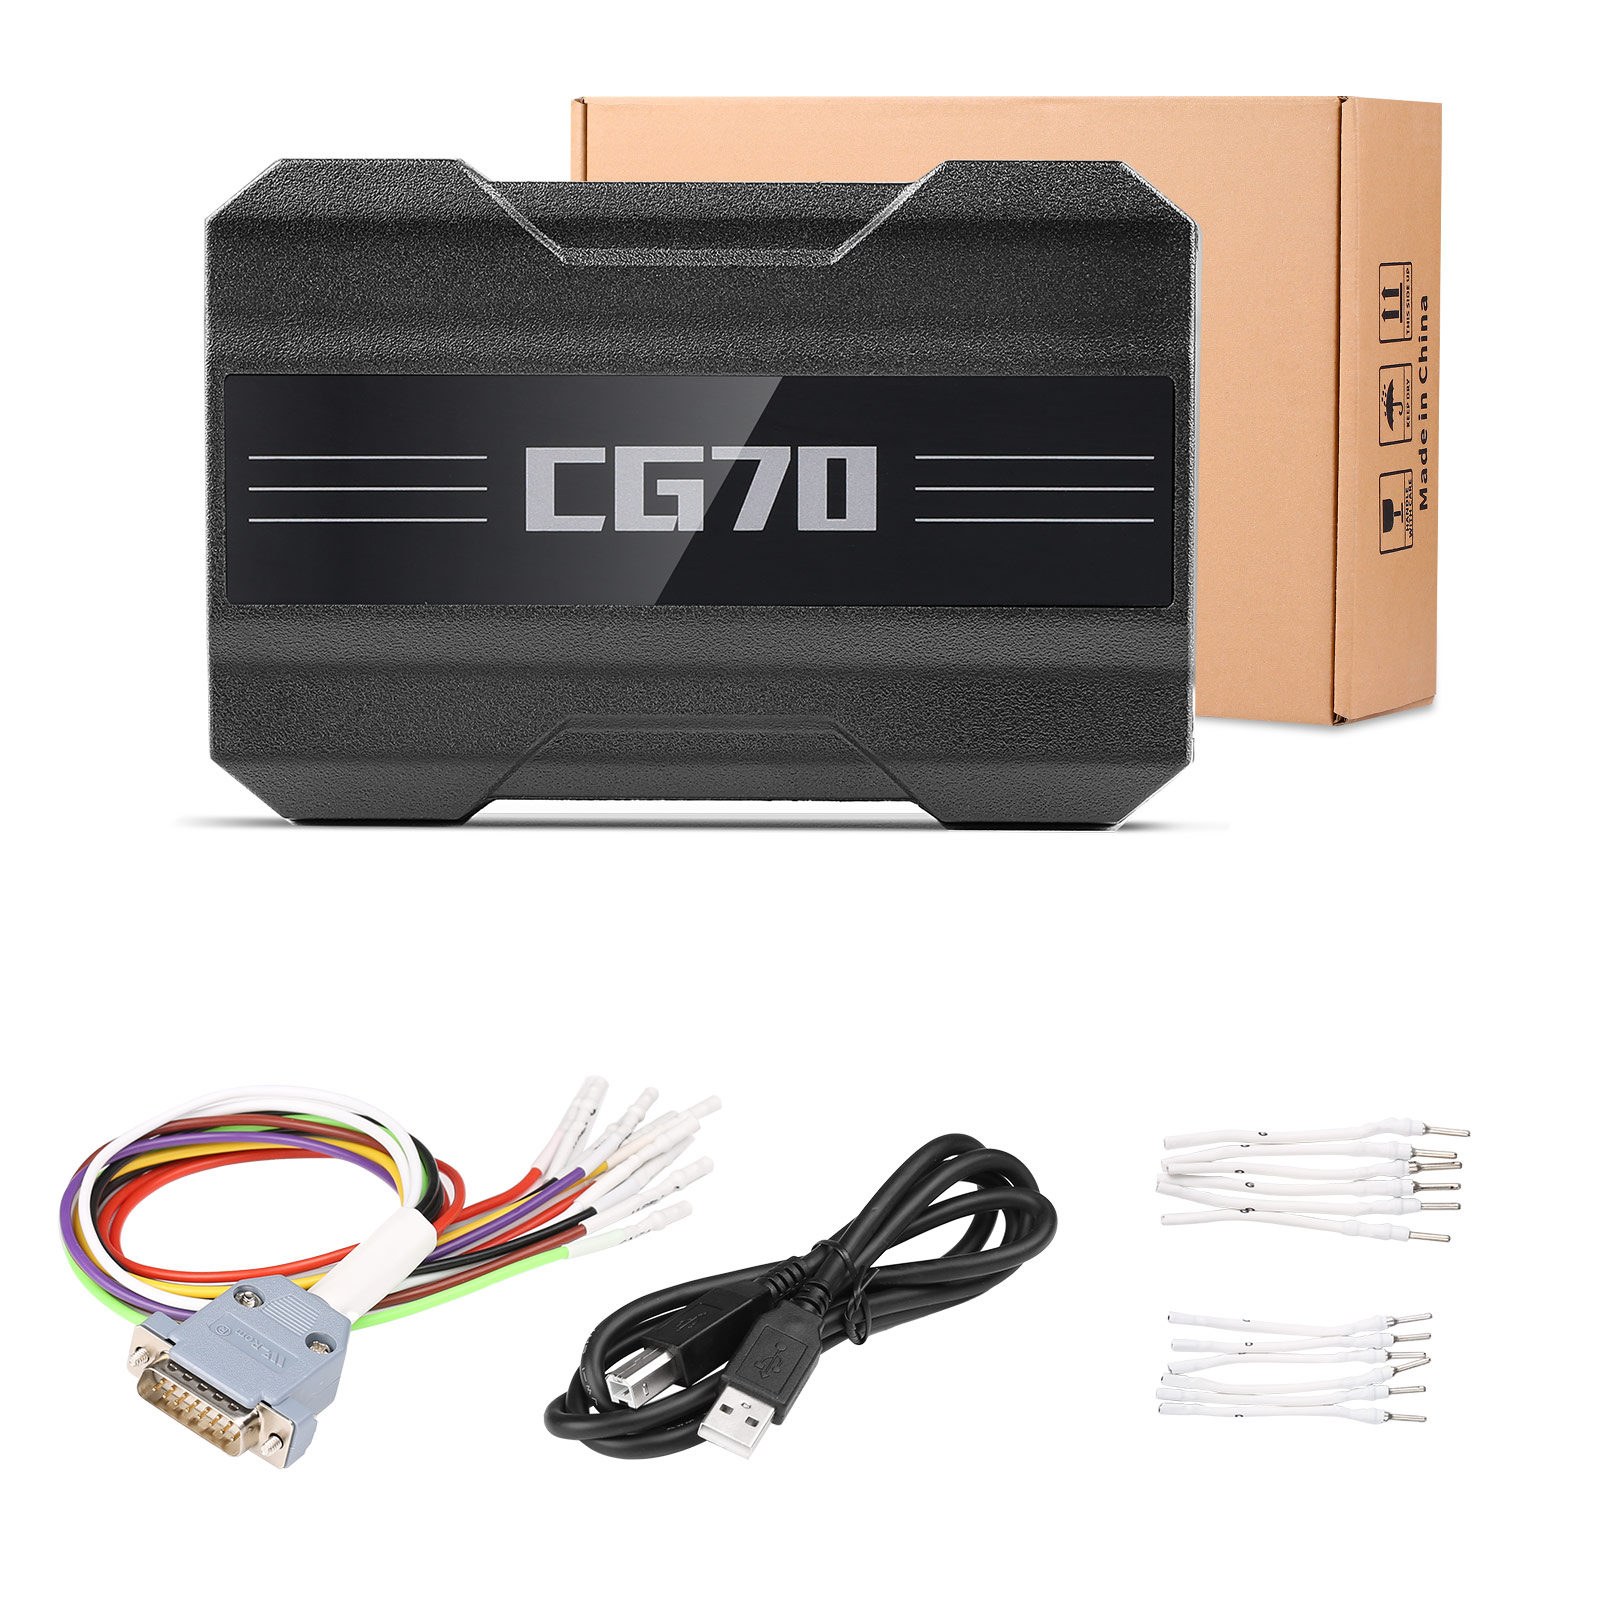 CGDI CG70 package